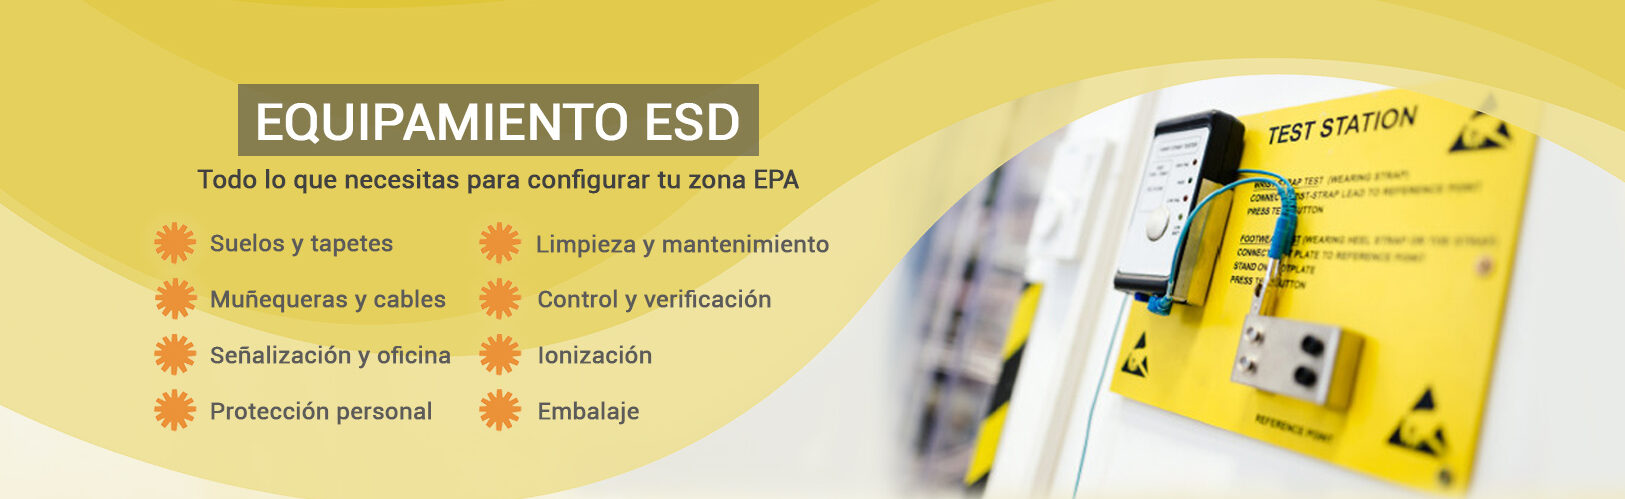 Catálogo de equipamiento ESD